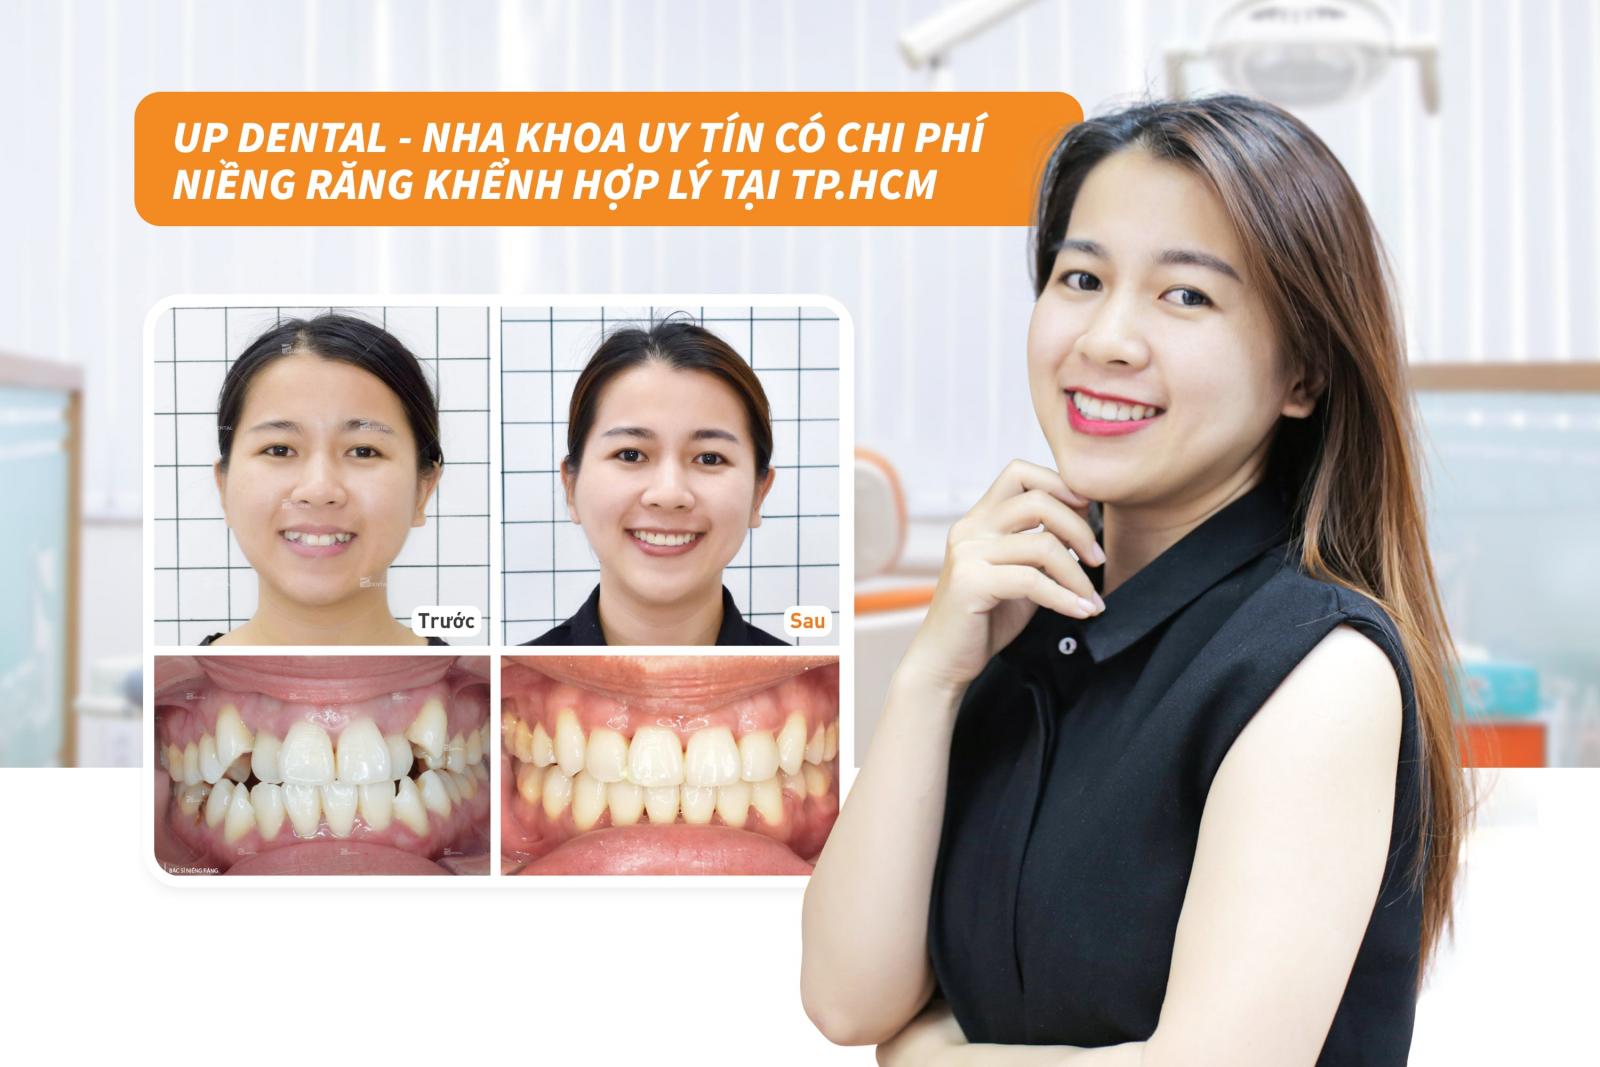 Up Dental Nha khoa uy tín có chi phí niềng răng khểnh hợp lý tại TP.HCM